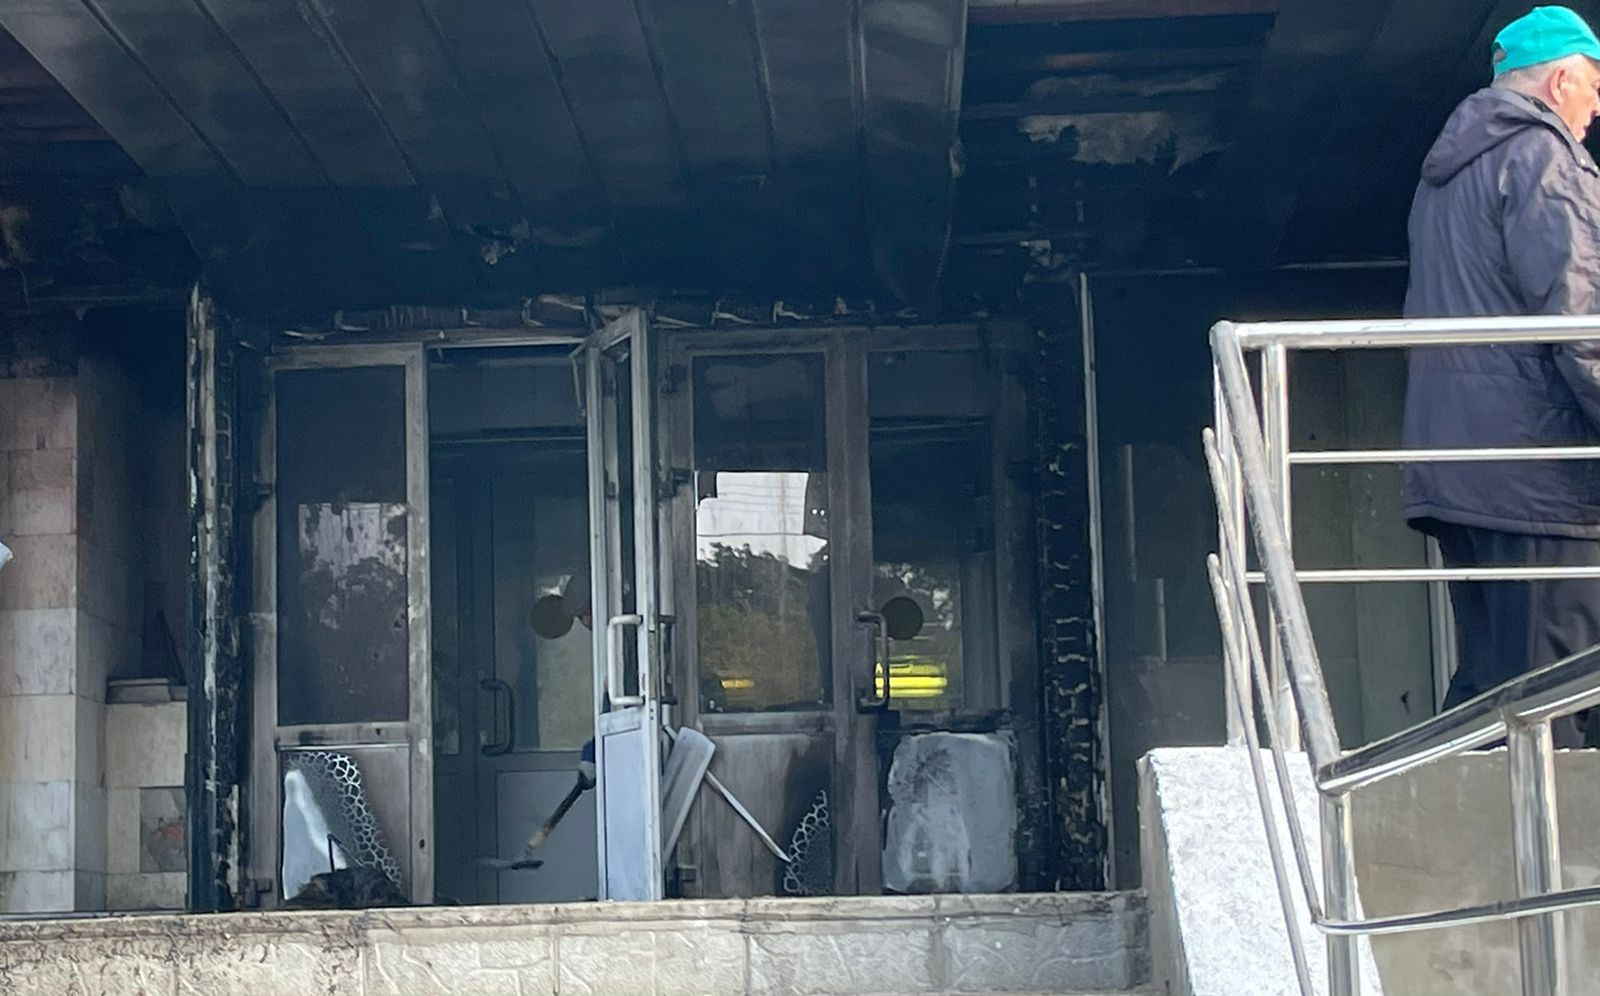 Дом 09 09 2022. Пожар в здании. Разбитое здание. Пожар в Тольятти вчера. Пожар в Иваново.